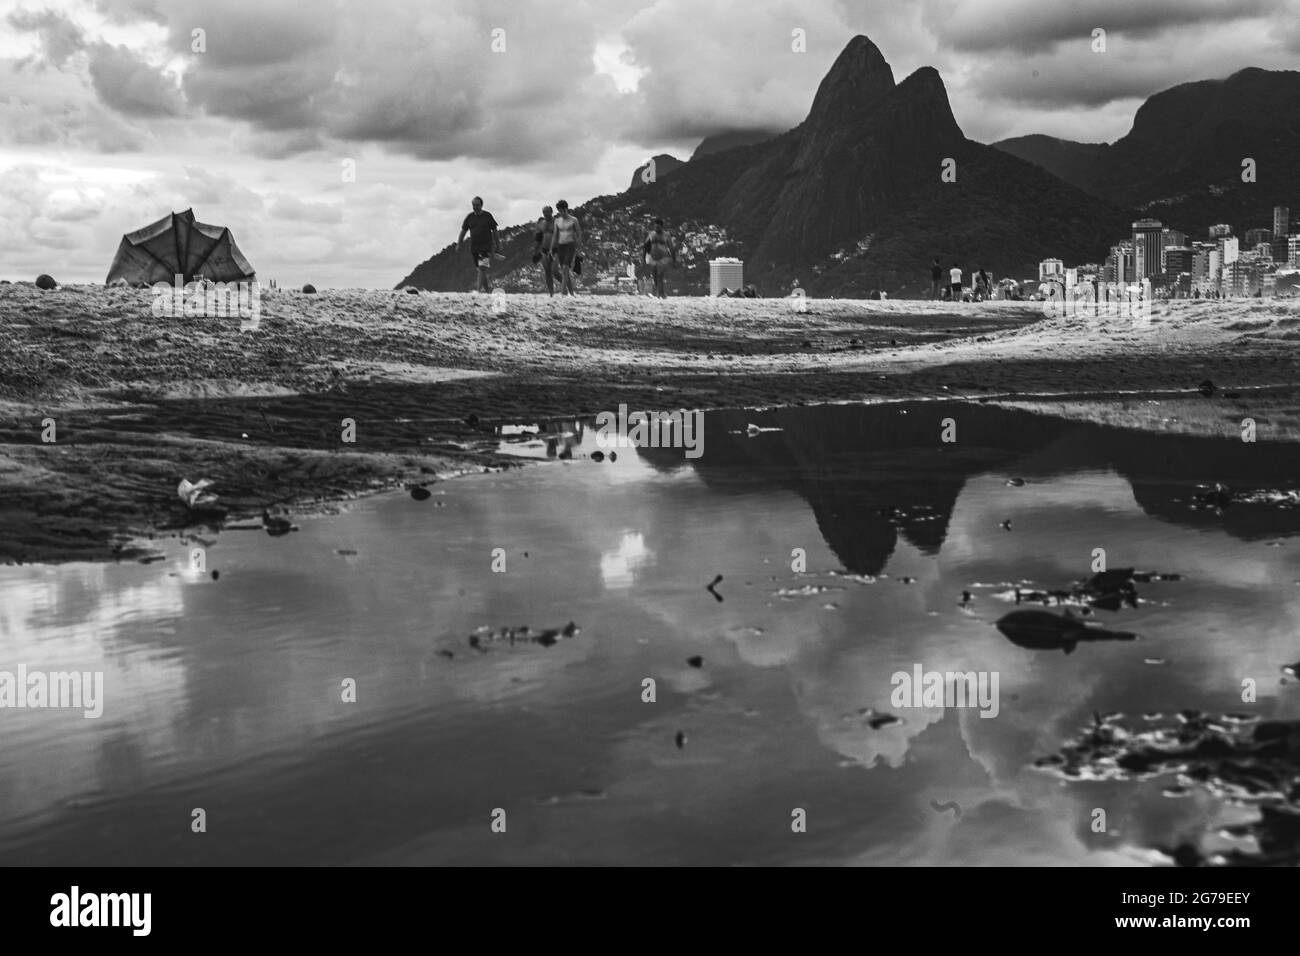 Grande puddle d'eau après la pluie reflétant deux Frères montagne (Dais Irmaos) à la plage d'Ipanema/Leblon à Rio de Janeiro, Brésil. Leica M10 Banque D'Images